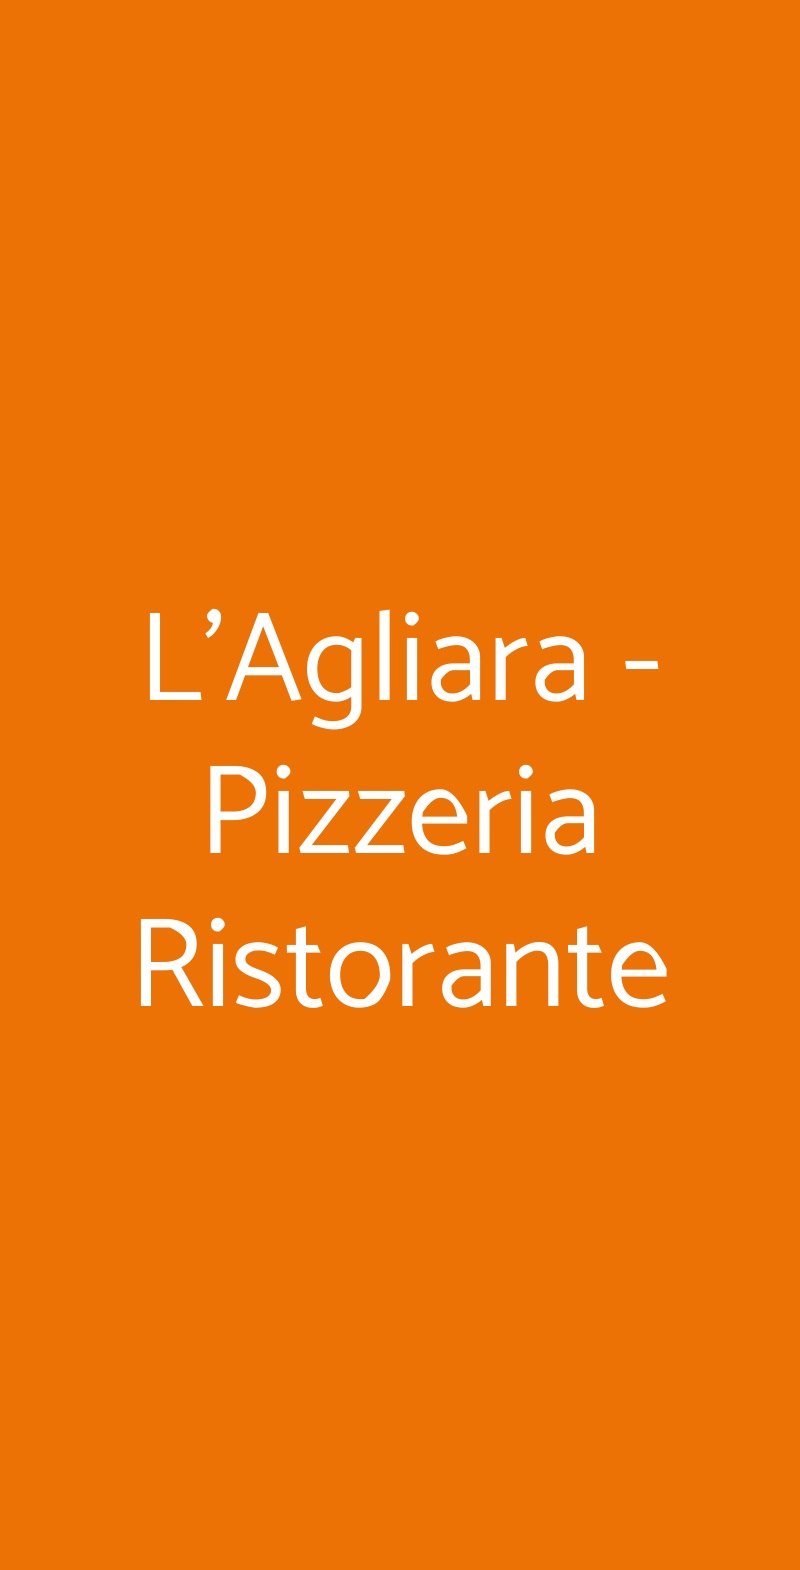 L'Agliara - Pizzeria Ristorante Prato menù 1 pagina